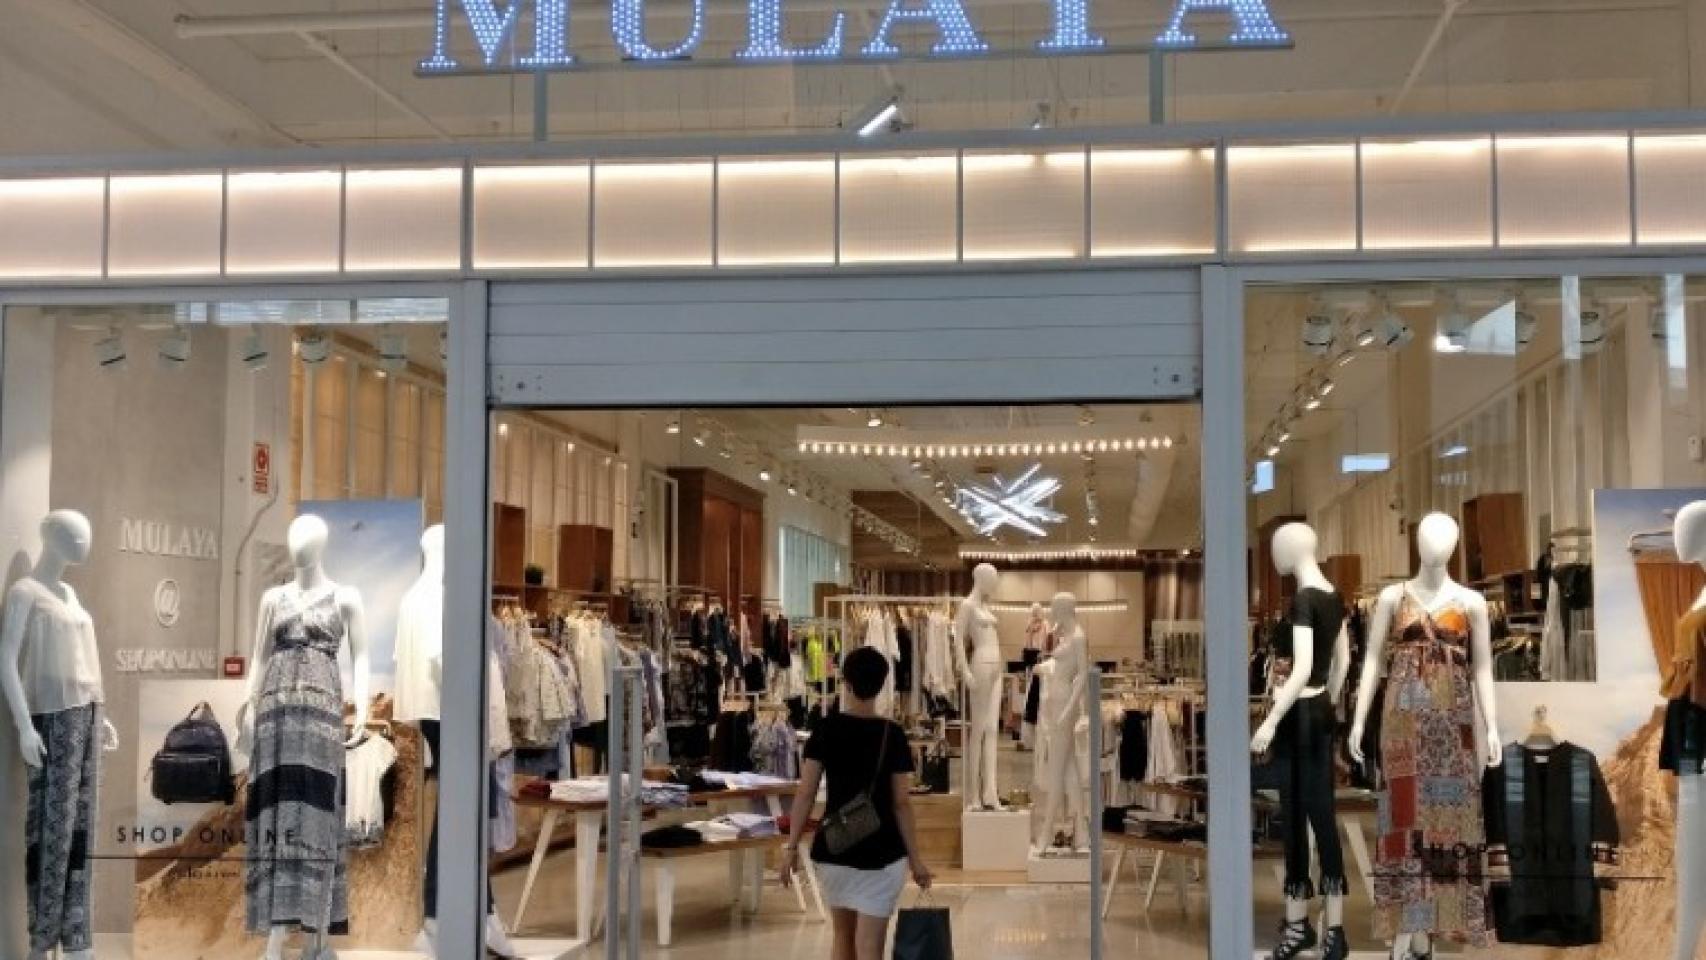 casual limpiador Enumerar Mulaya, el aspirante a Zara chino que factura más de 5 millones de euros